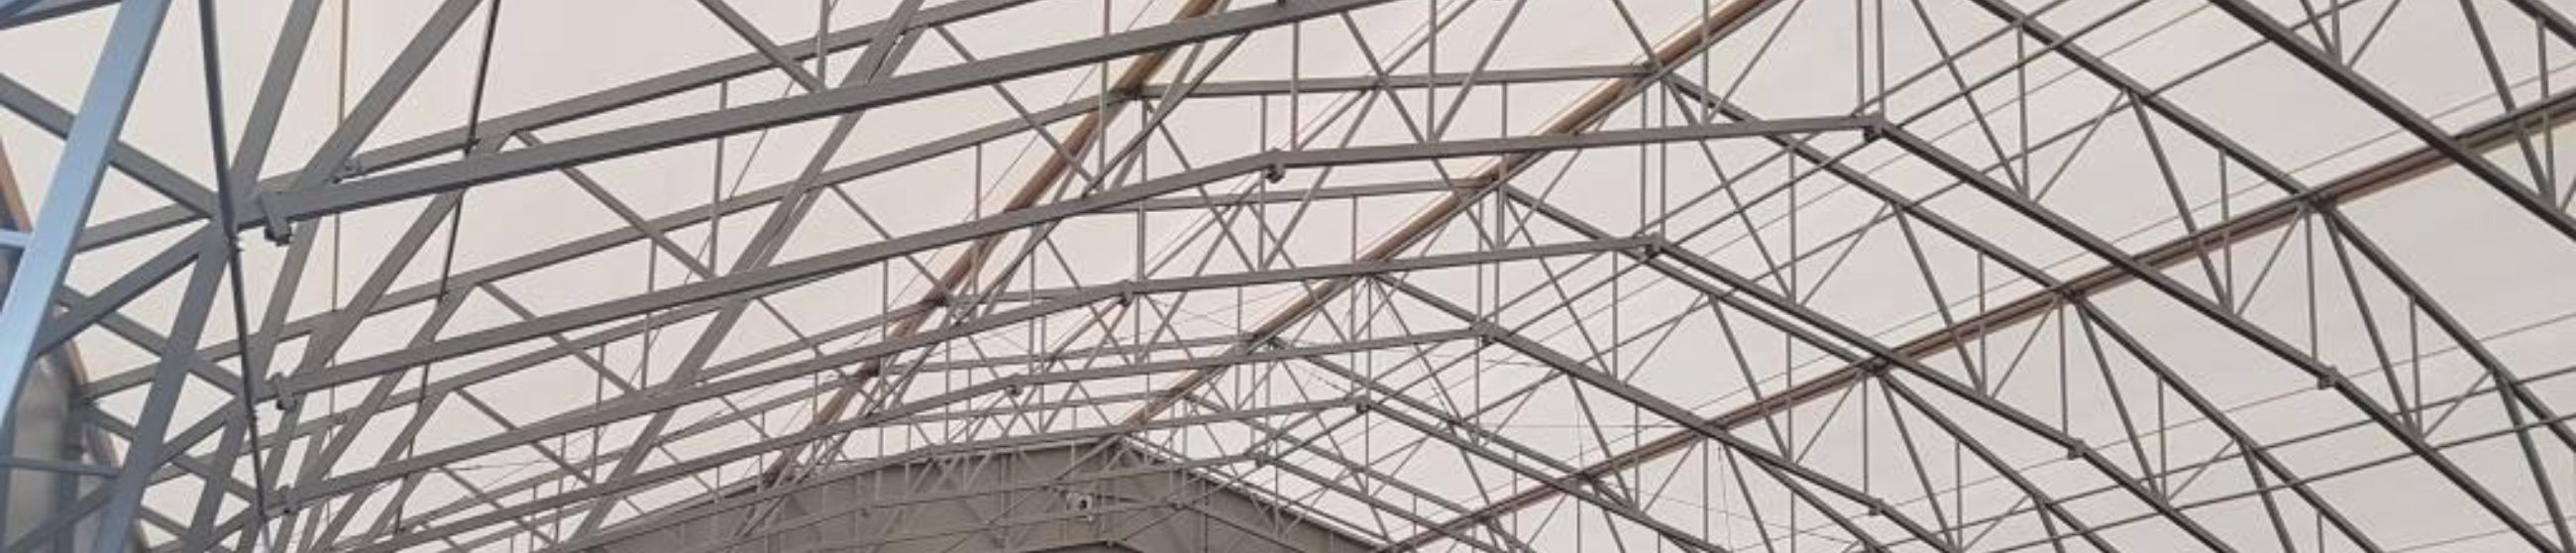 Oleme spetsialiseerunud PVC-hallide, angaaride ning erinevate tendi- ja PVC-kardinalahenduste väljatöötamisele, valmistamisele ja paigaldamisele.